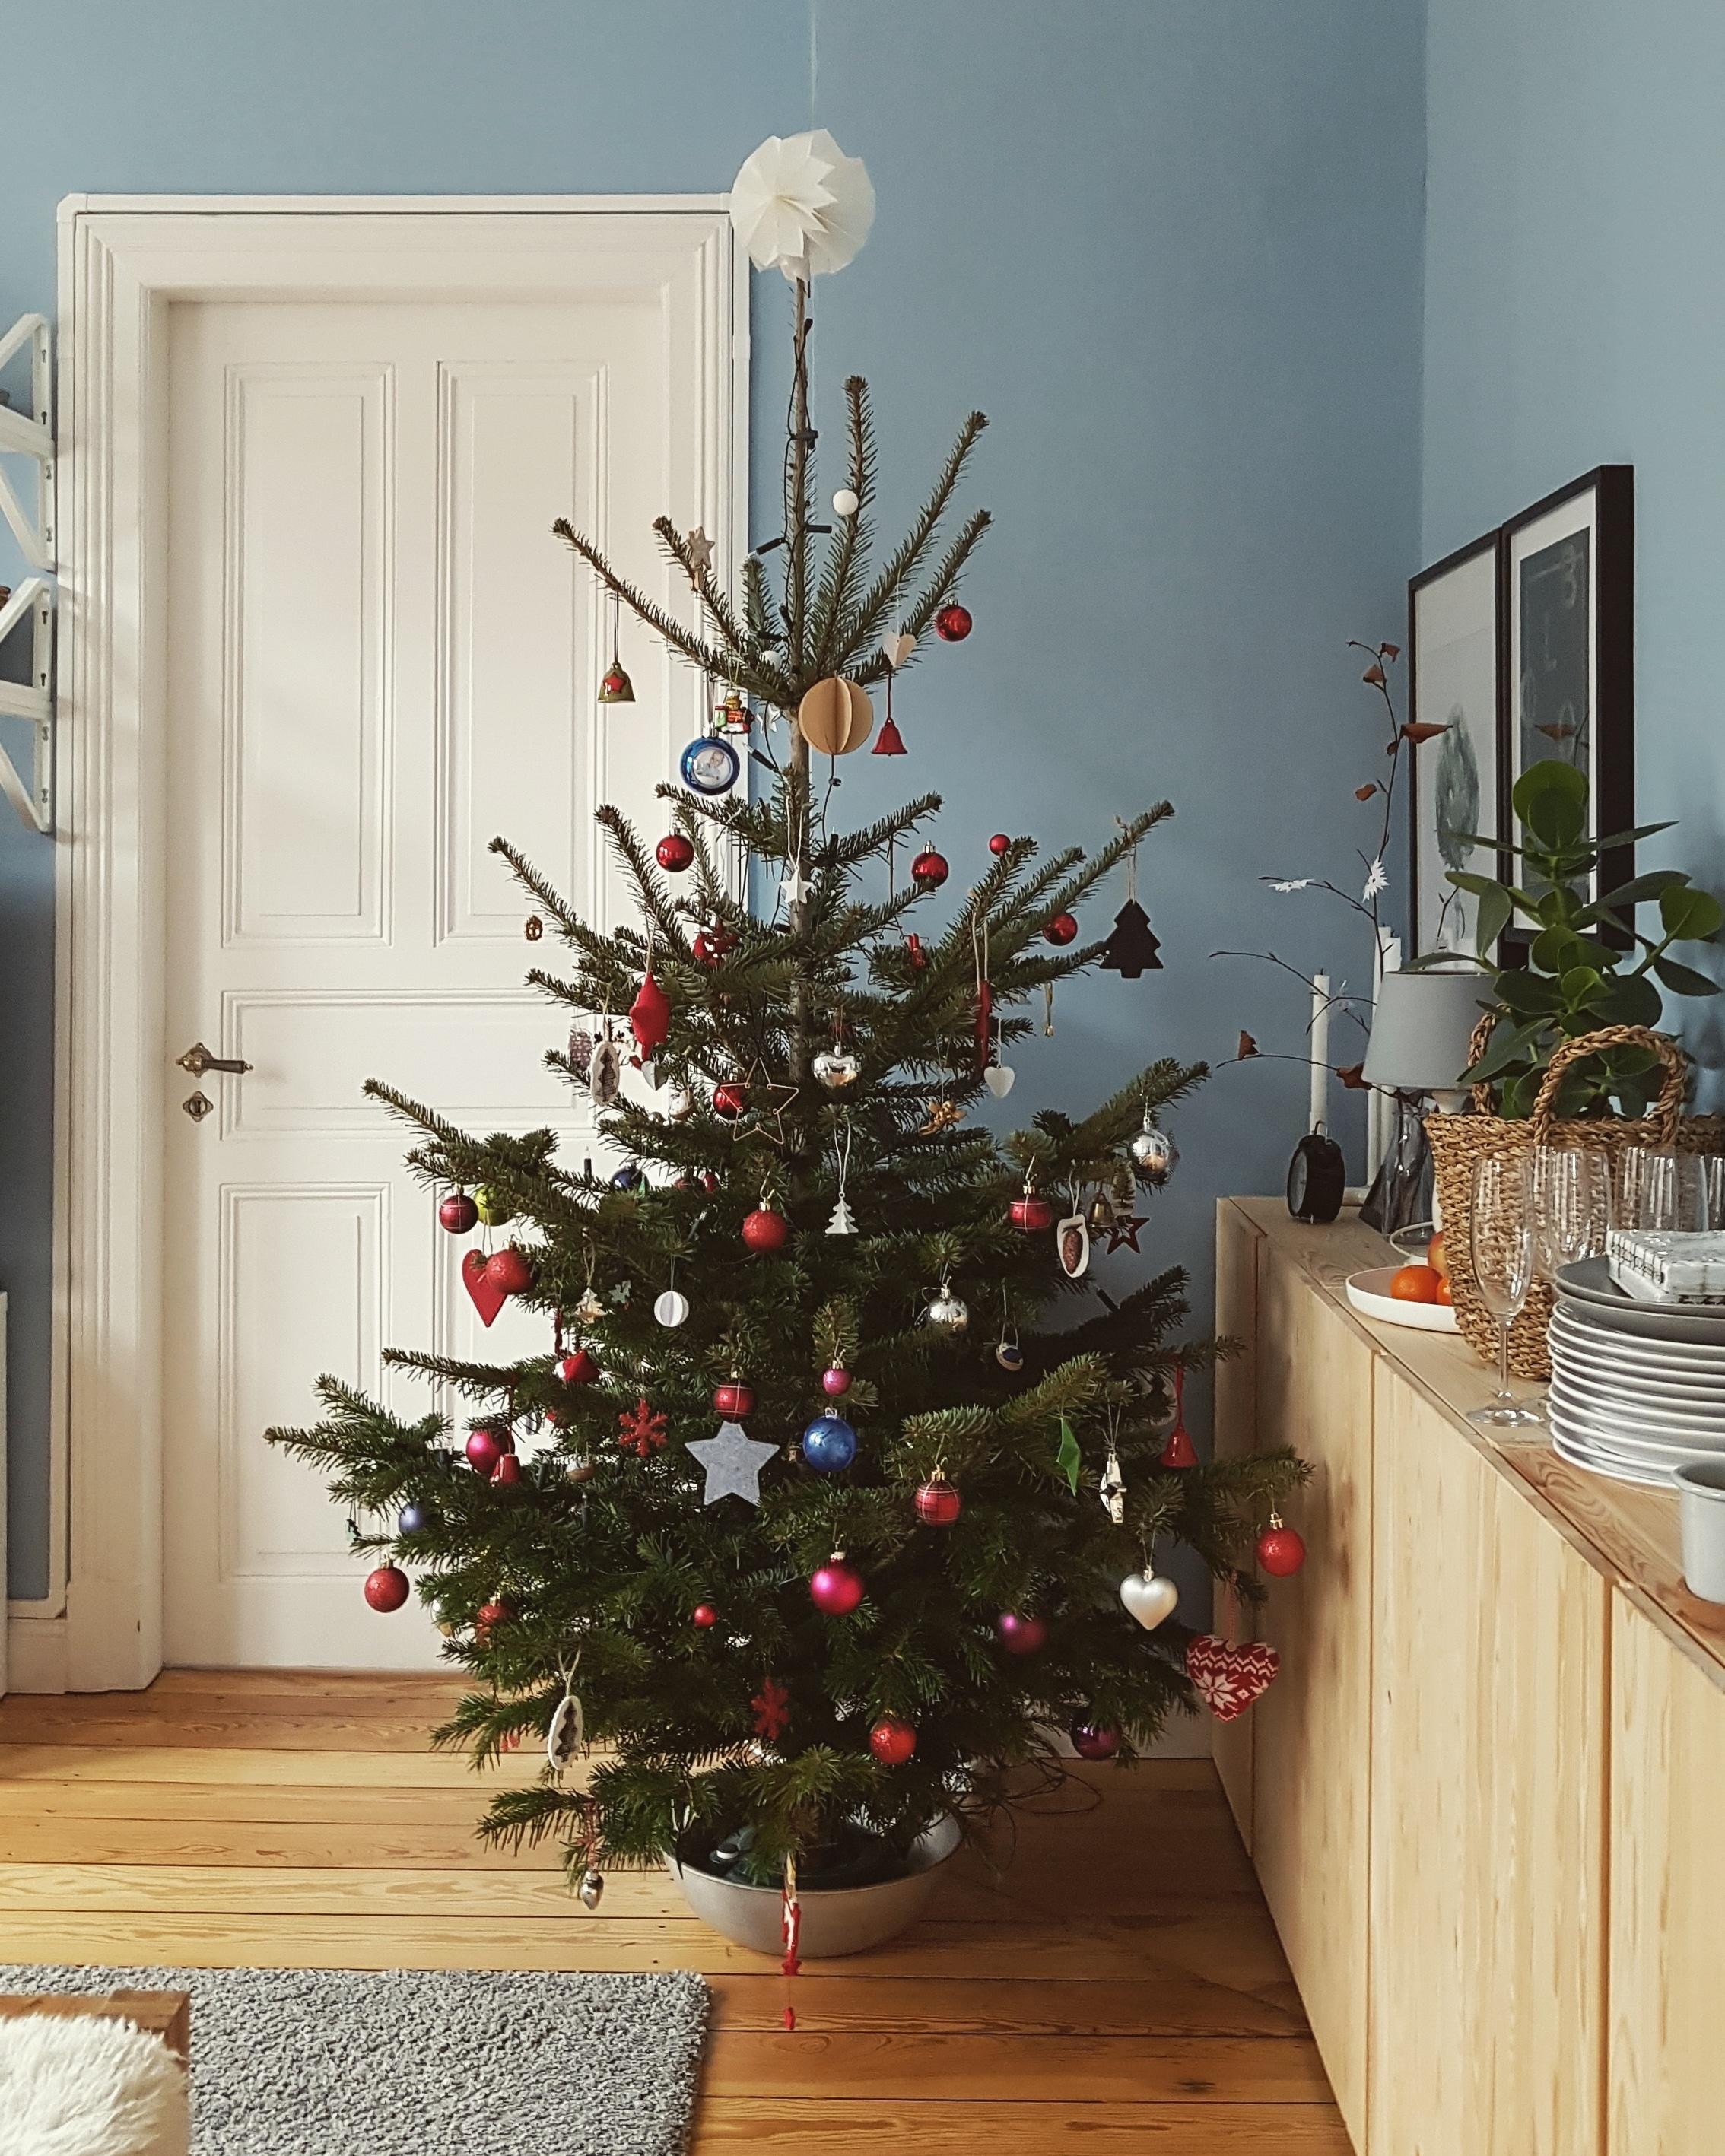 Last Christmas... I gave you my ❤️ #weihnachten #wohnzimmer #altbau #altbauliebe #weihnachtsbaum 